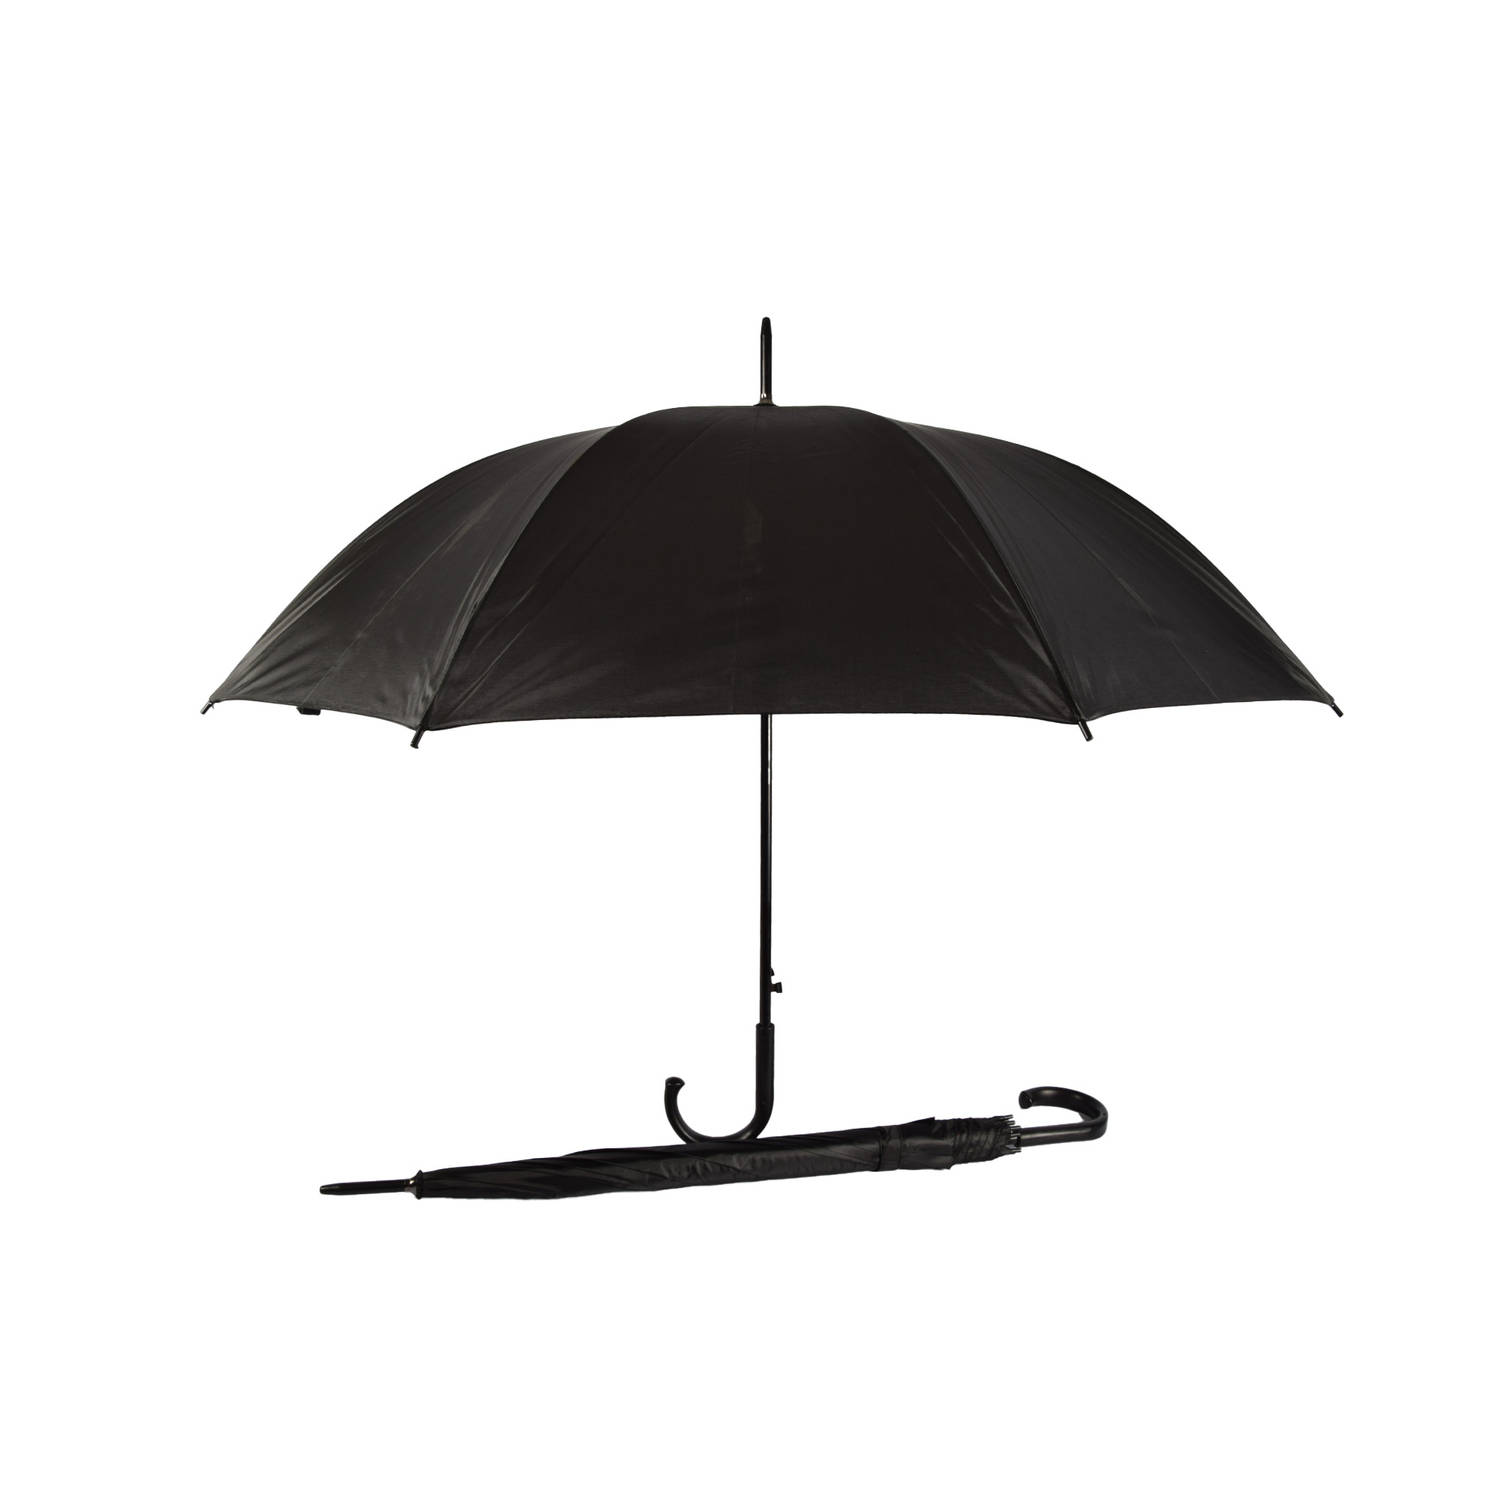 Set van 2 Zwarte Opvouwbare Paraplu's - Windproof, Automatisch, Compact - Polyester/Aluminium - Kamperen & Outdoor - Regenkleding - Heren/Dames – 115cm Diameter